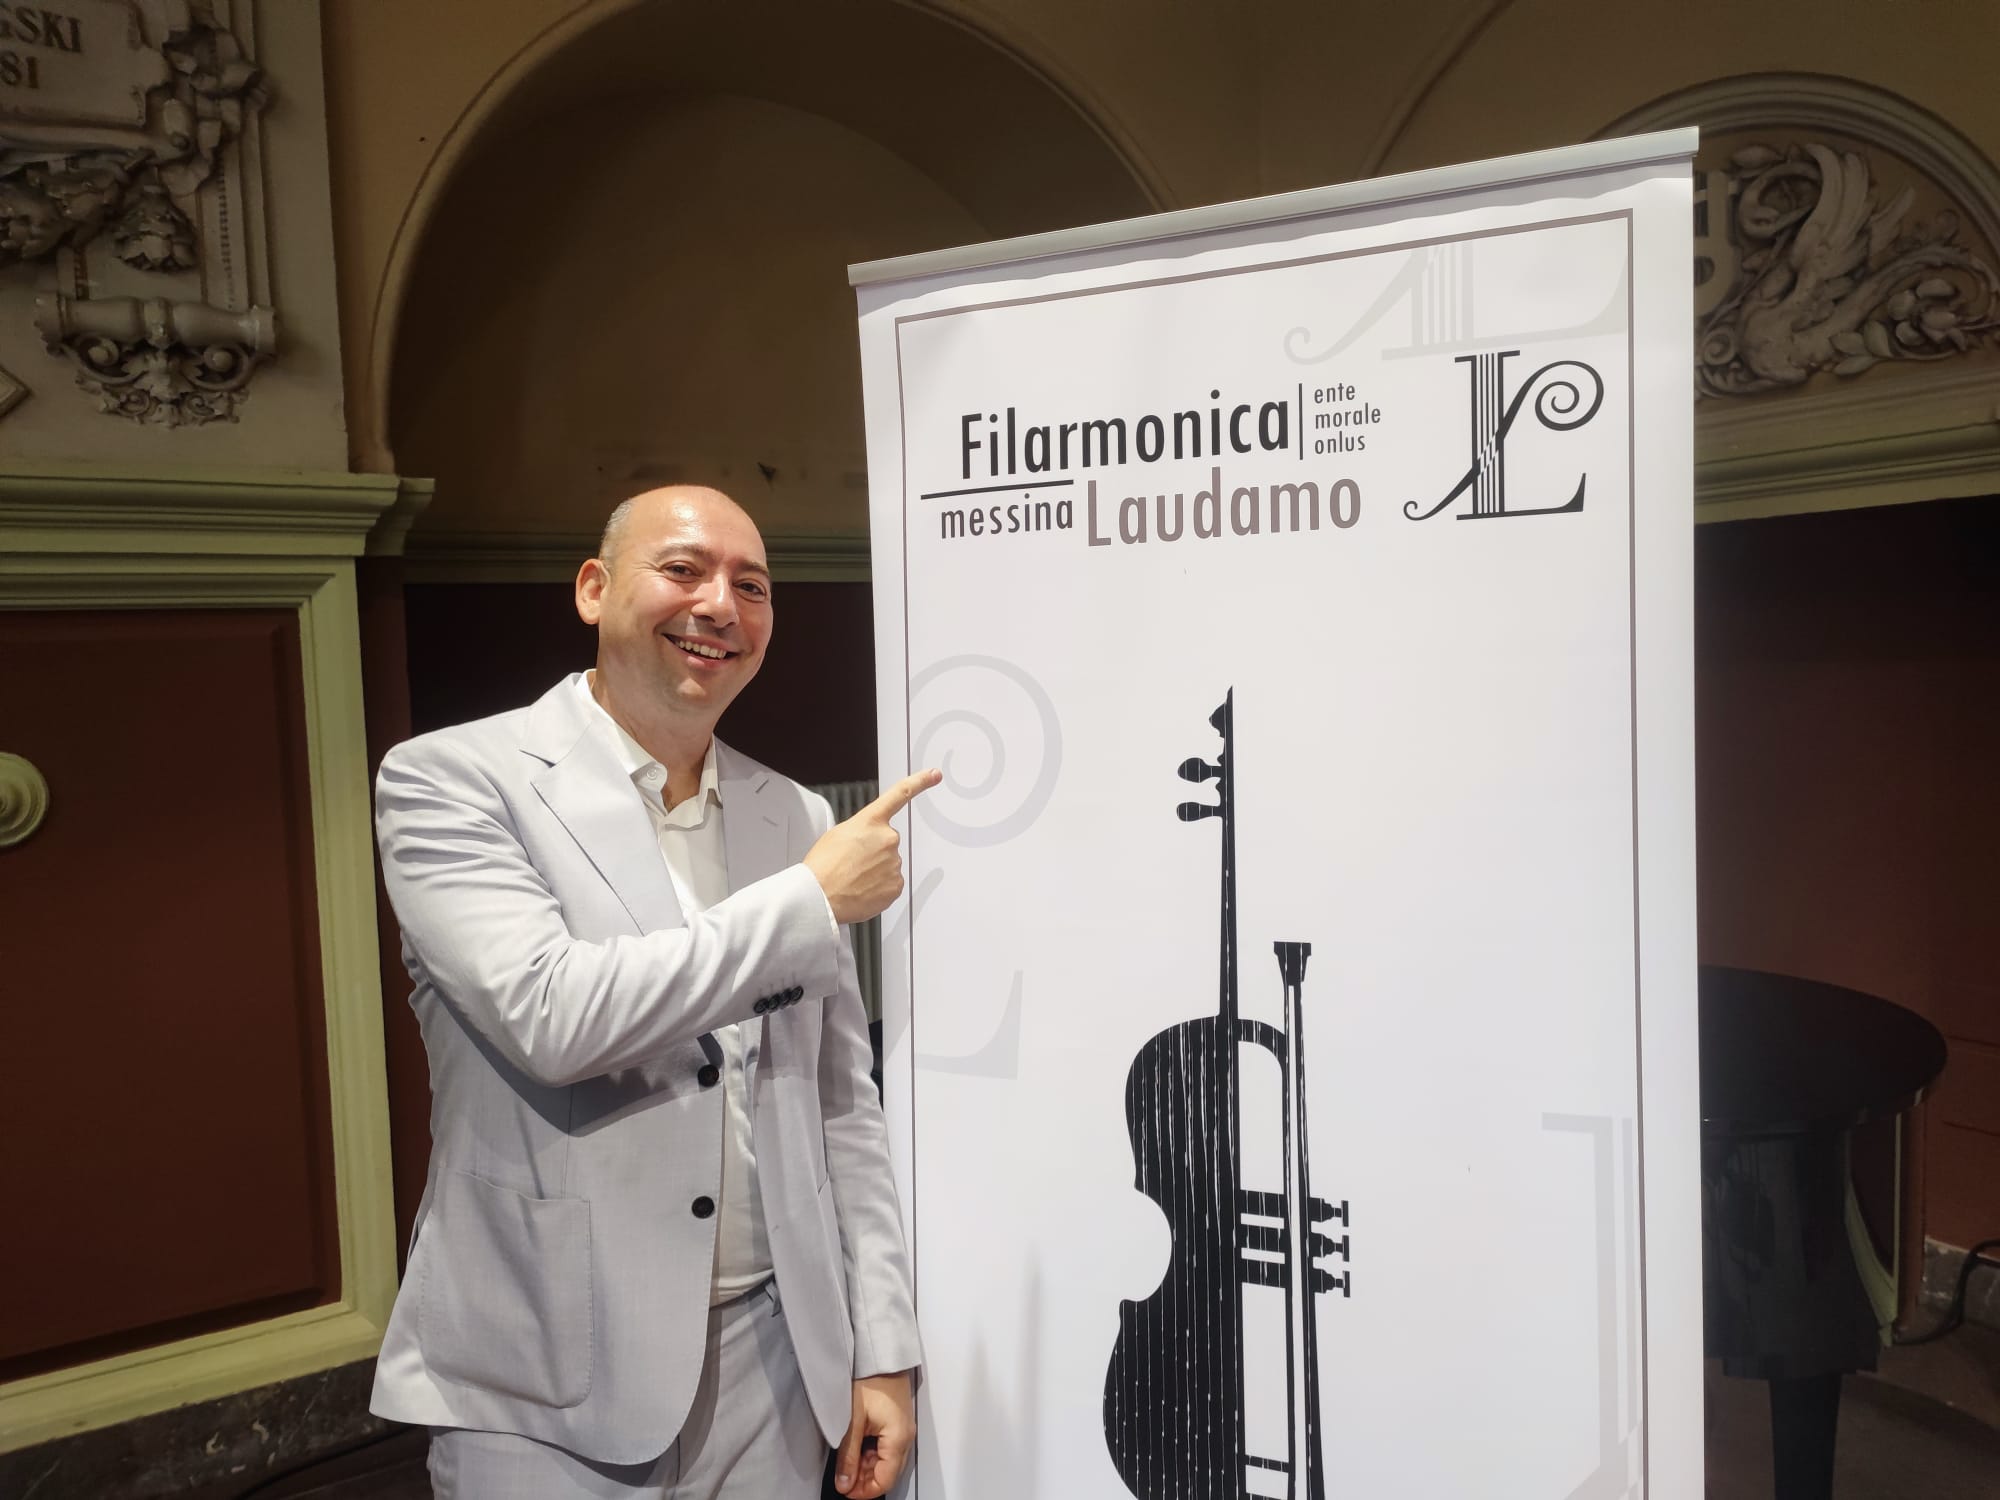 Filarmonica Laudamo nuova stagione a Messina dal 22 ottobre guarda